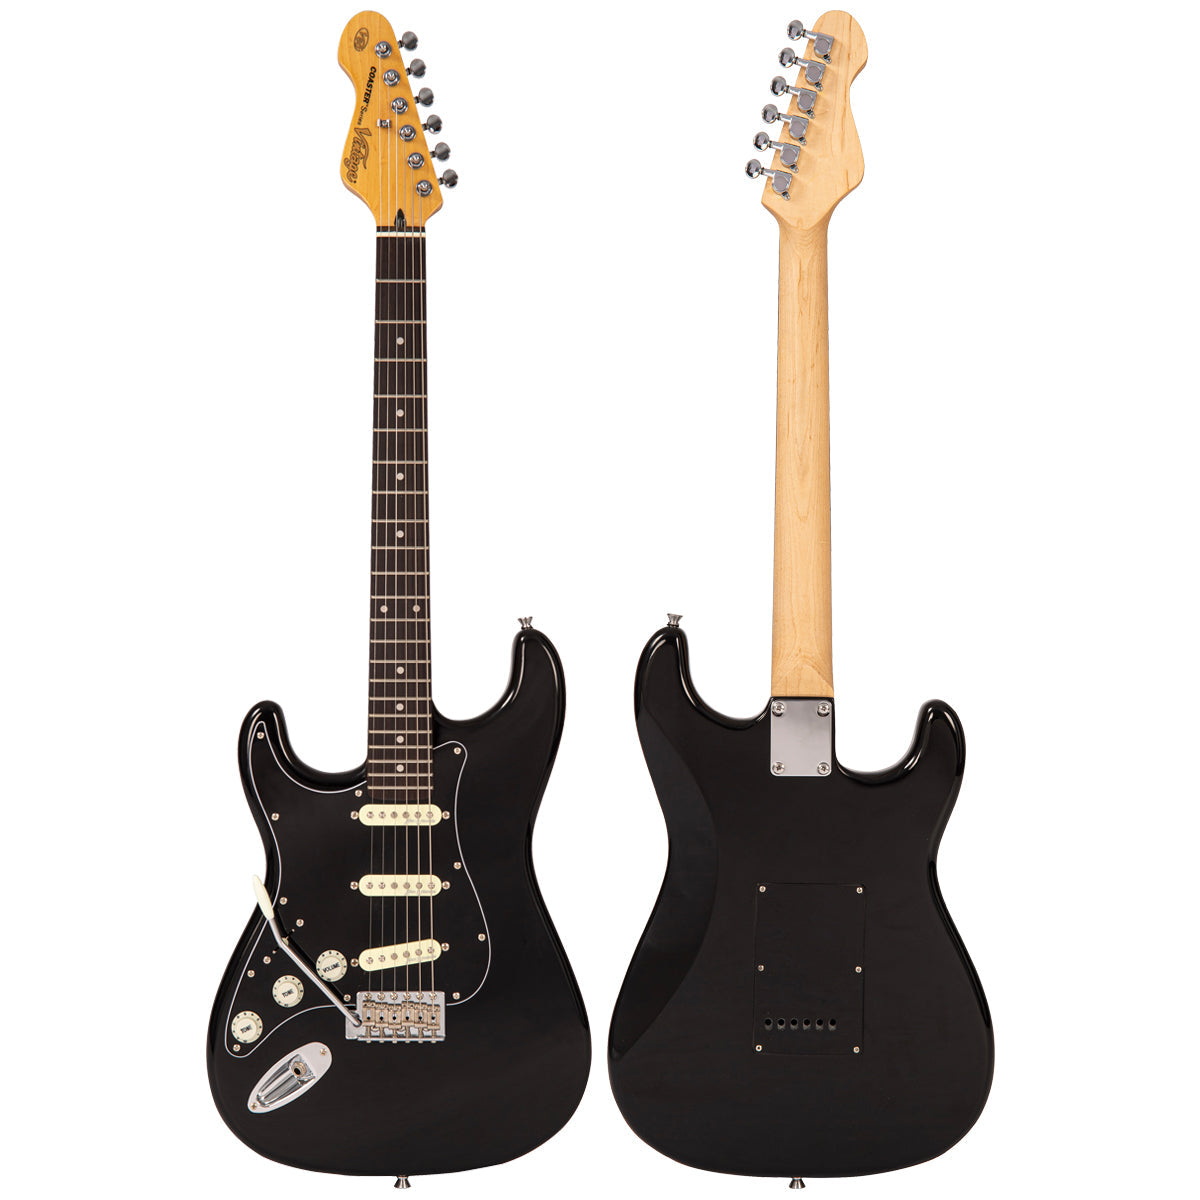 Vintage V60 Coaster Series Electric Guitar ~ Left Hand Boulevard Black, Left Hand Electric Guitars for sale at Richards Guitars.